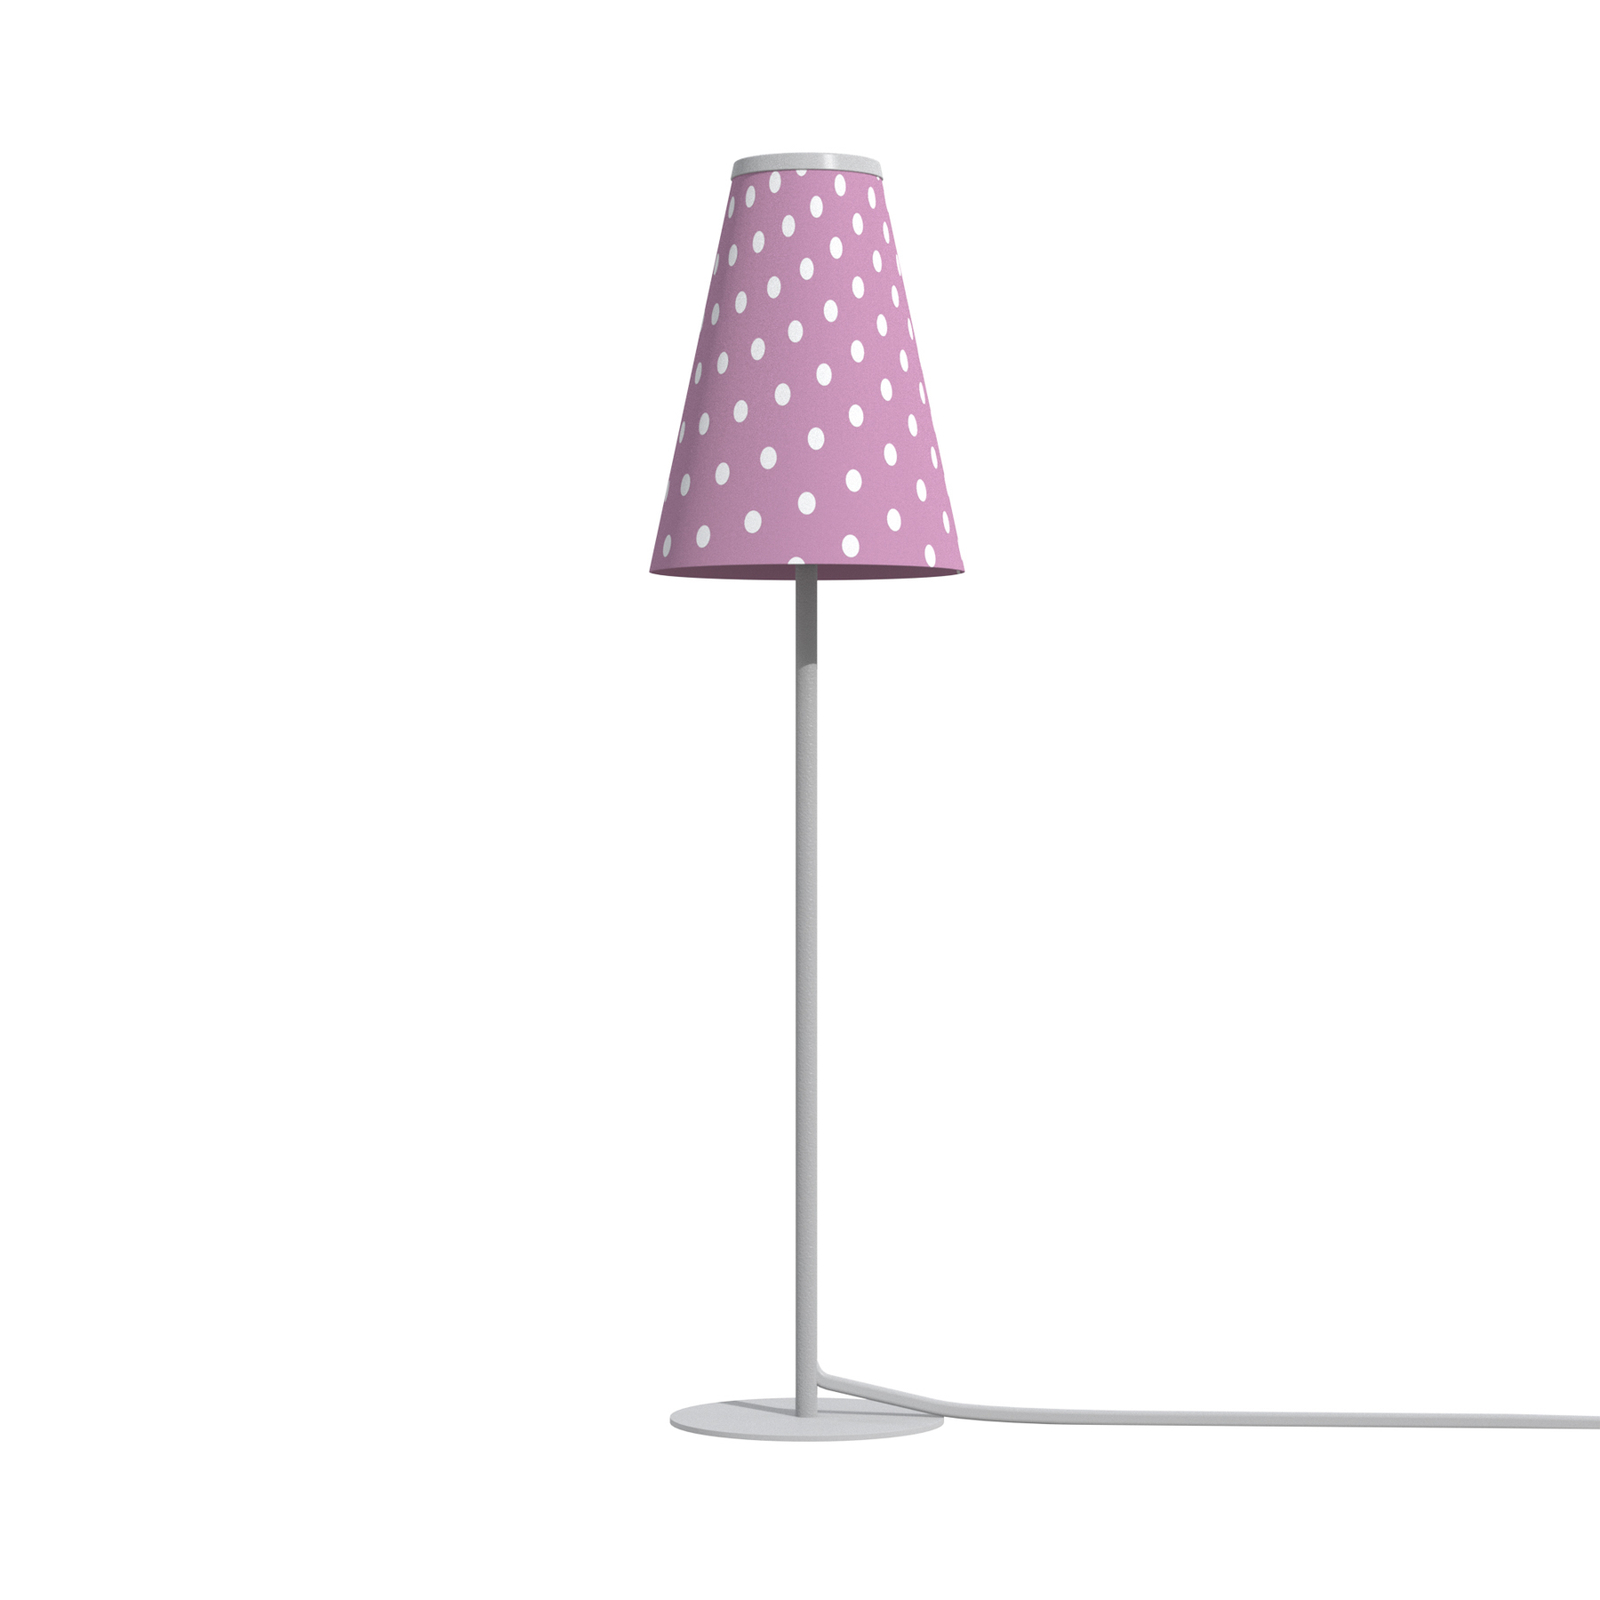 Tafellamp Trifle, pink/wit met punt